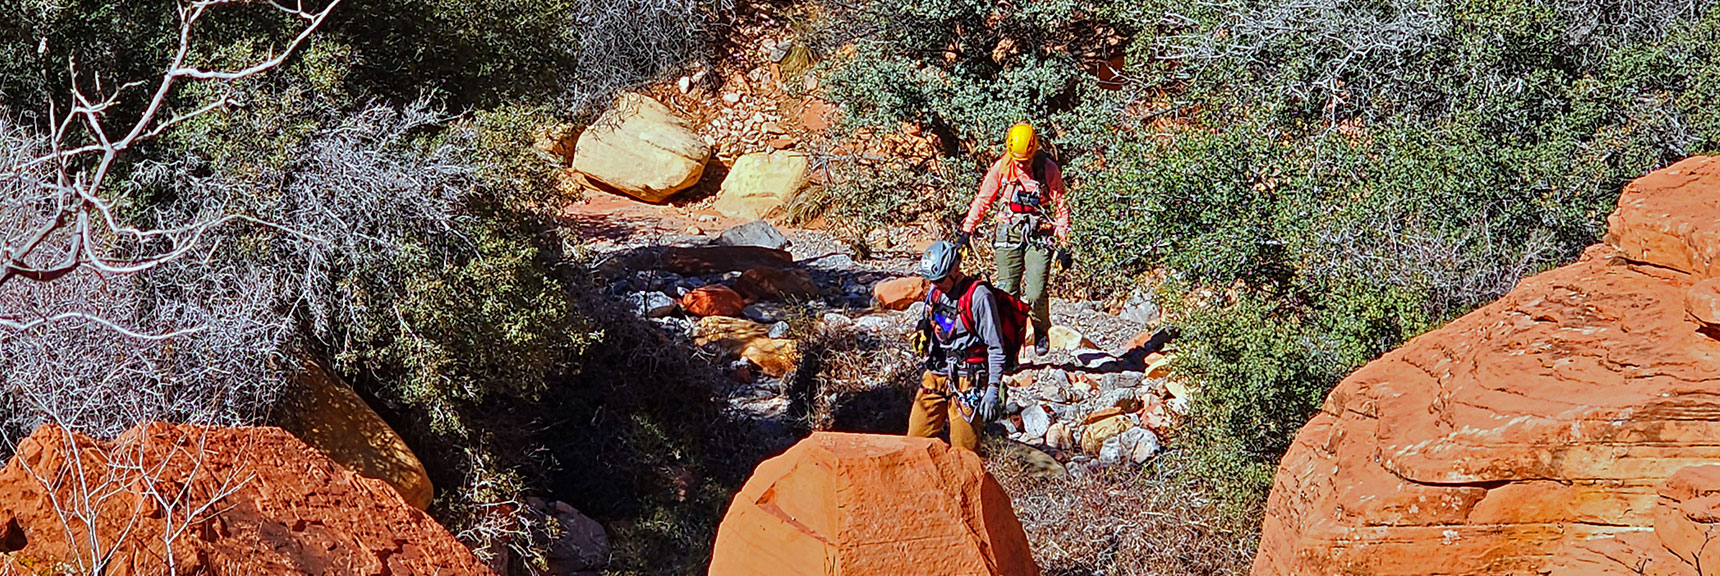 Rock Climbers Now Descending Through the Canyon | Pink Goblin Loop | Calico Basin, Nevada